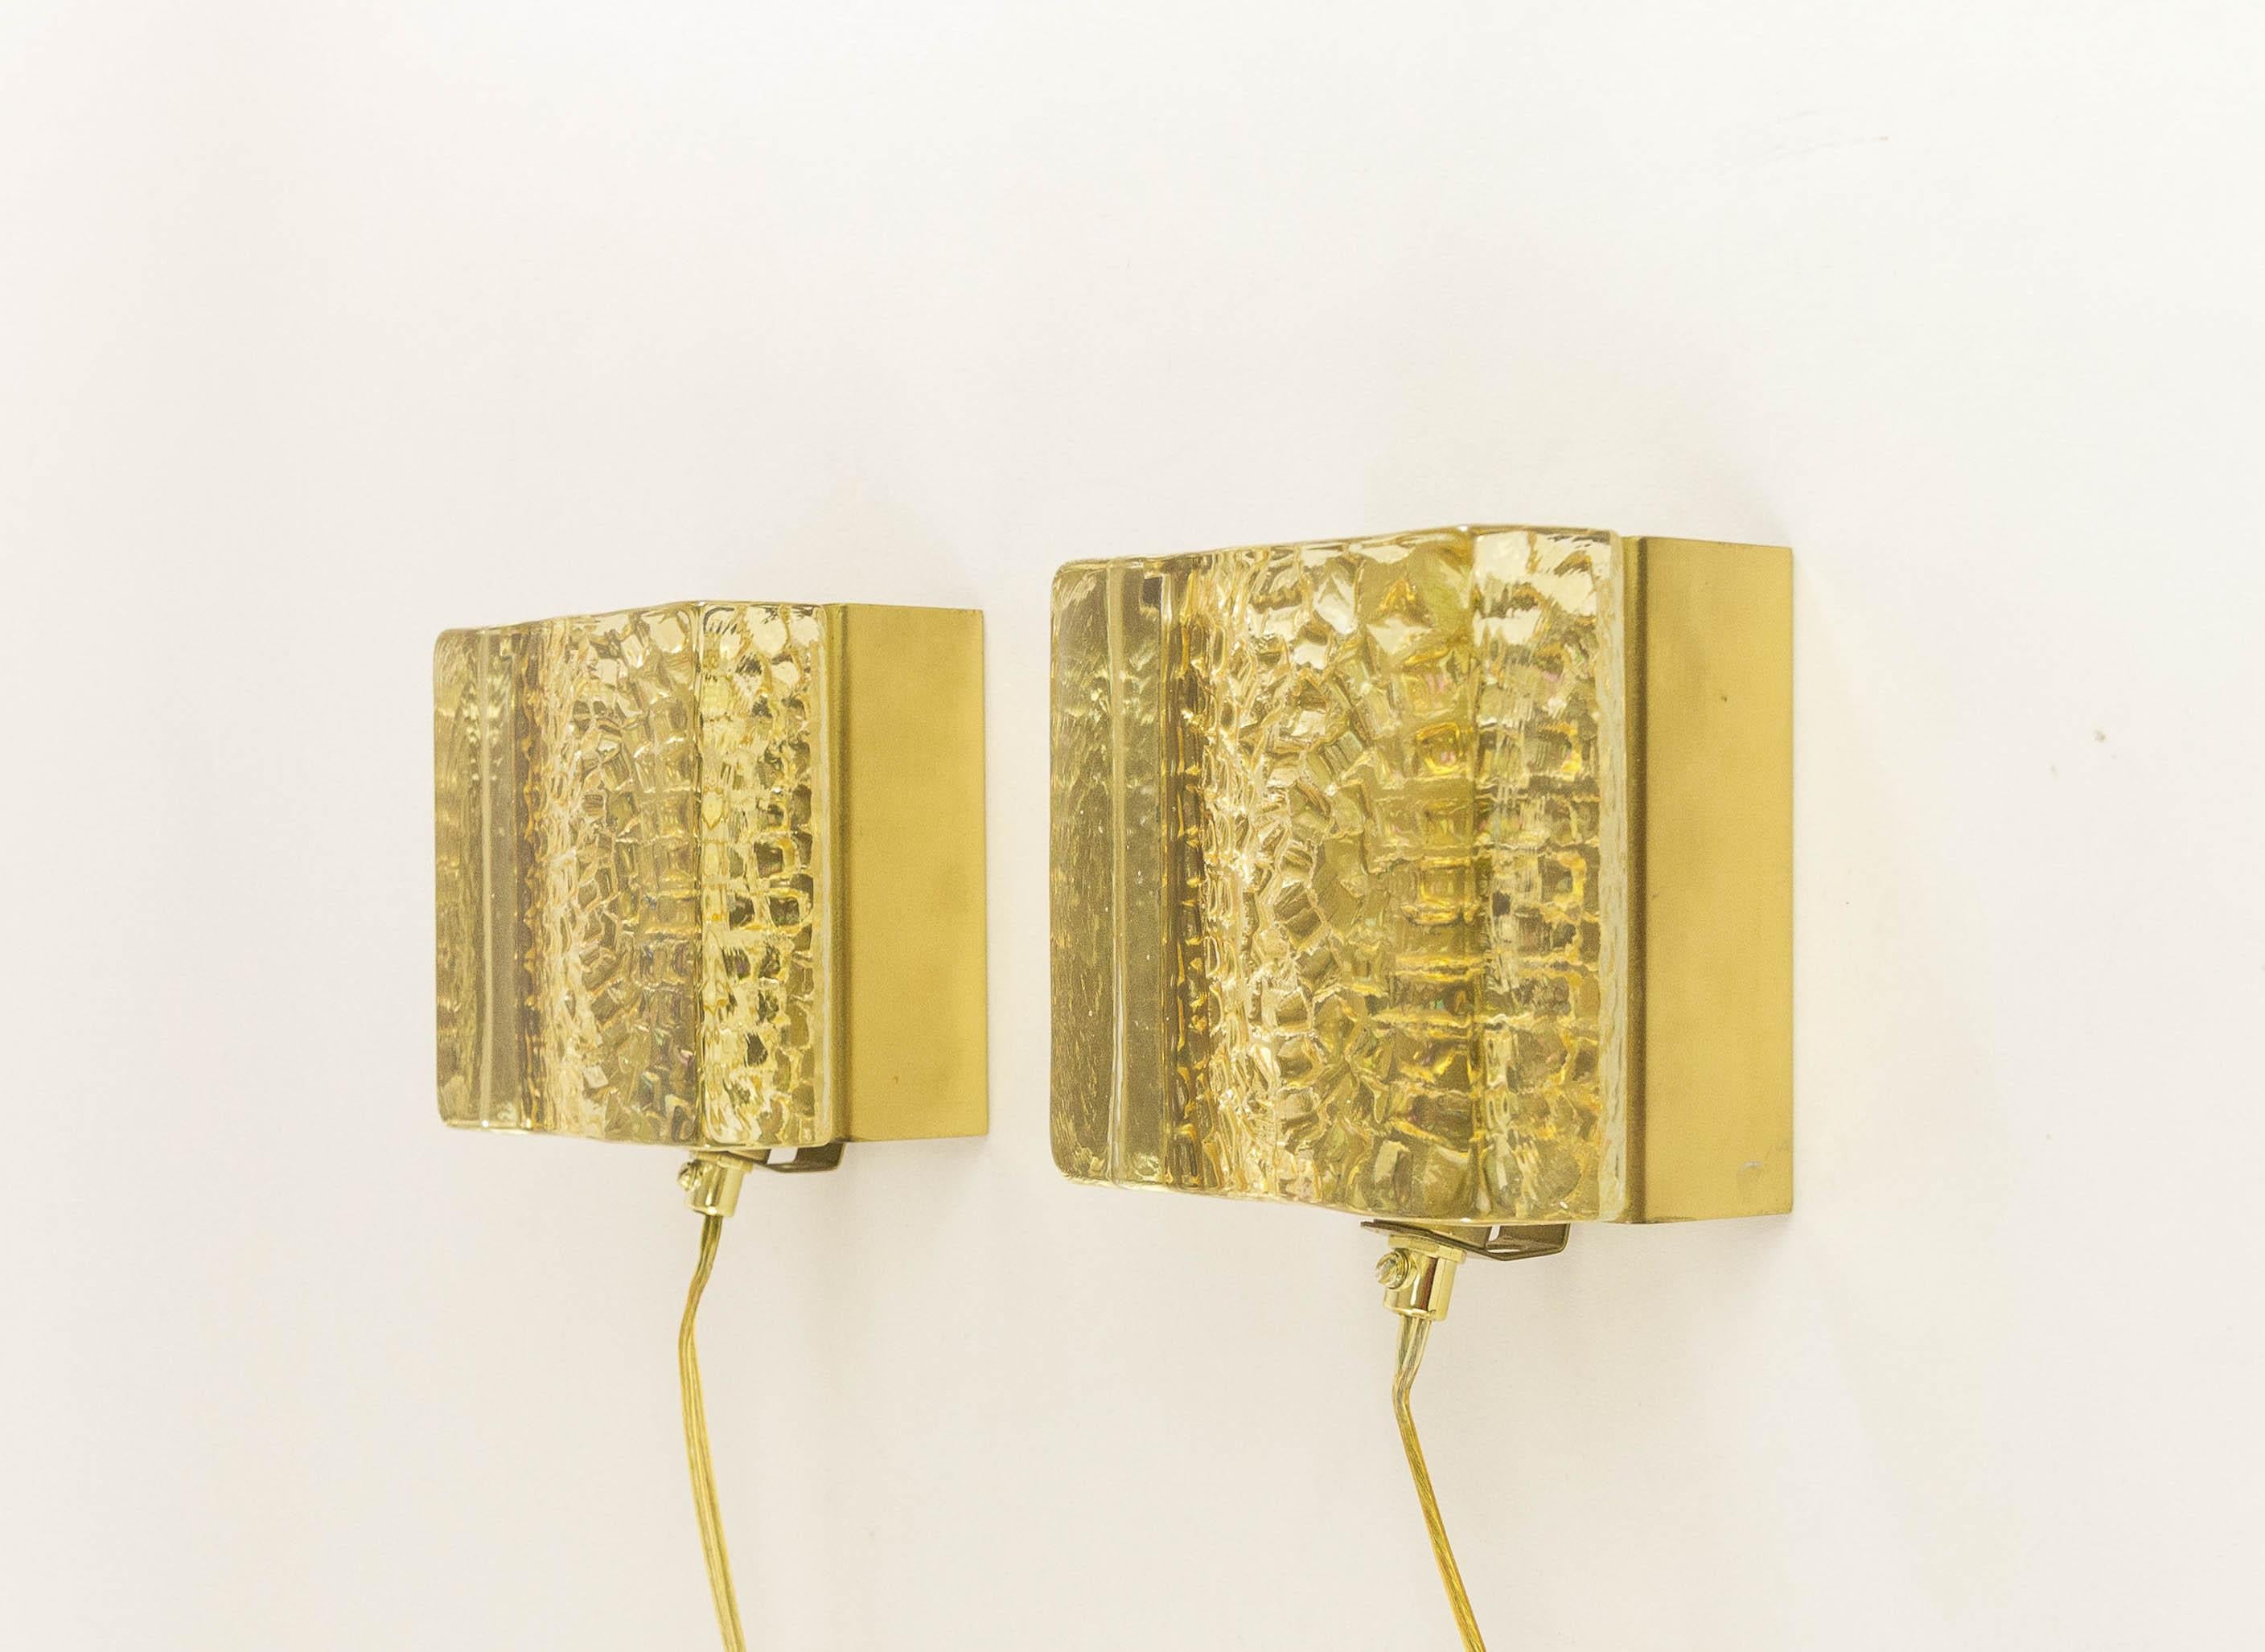 Ensemble de deux appliques Kalmar Lampet, produites par le fabricant danois de luminaires Vitrika dans les années 1970.

Les deux lampes sont composées de deux parties : un corps solide et assez lourd (1,5 kg) en verre doré fait à la main, et le